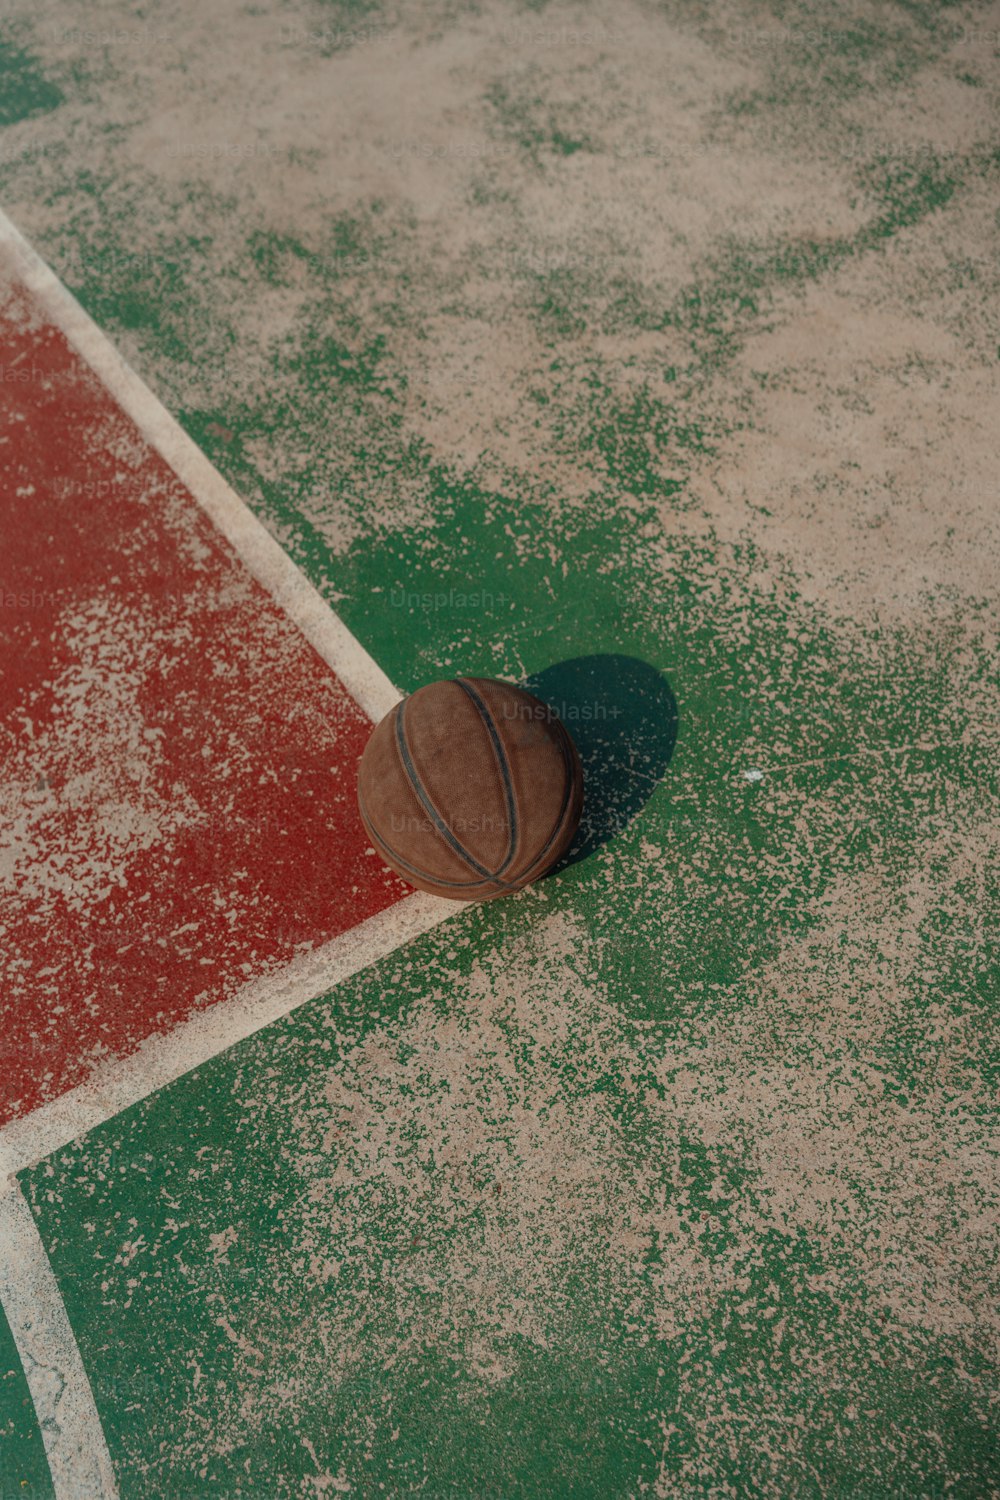 농구 코트 바닥에 누워 있는 농구공